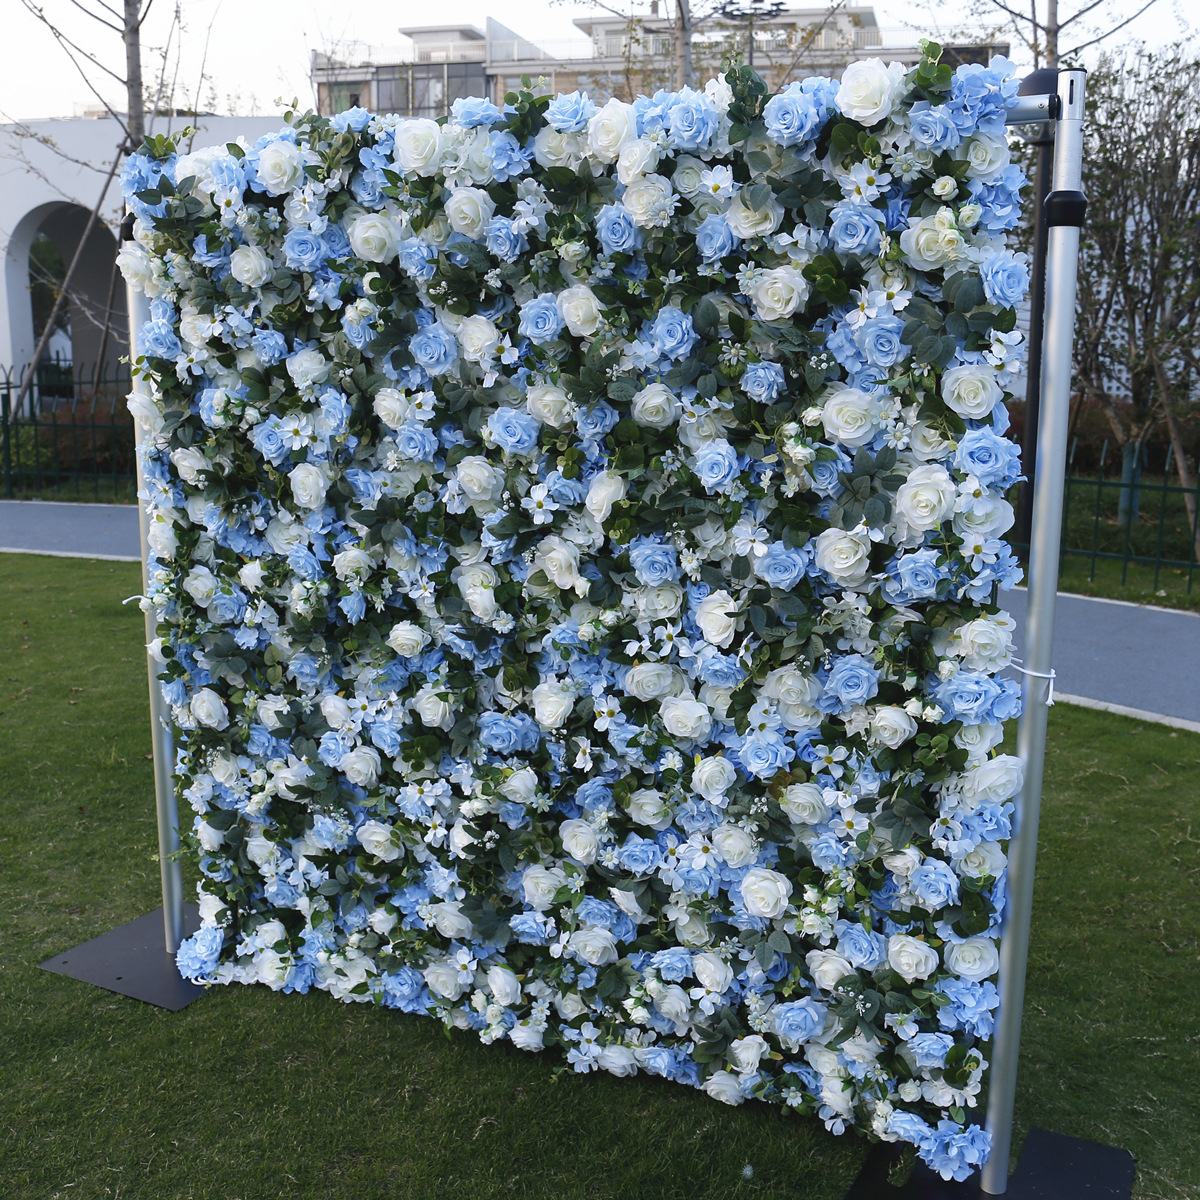 5D dreidimensionale Stoffunterseite Blumenwand Hintergrundwand hellblaue Rose bestickte Kugelblumenwand